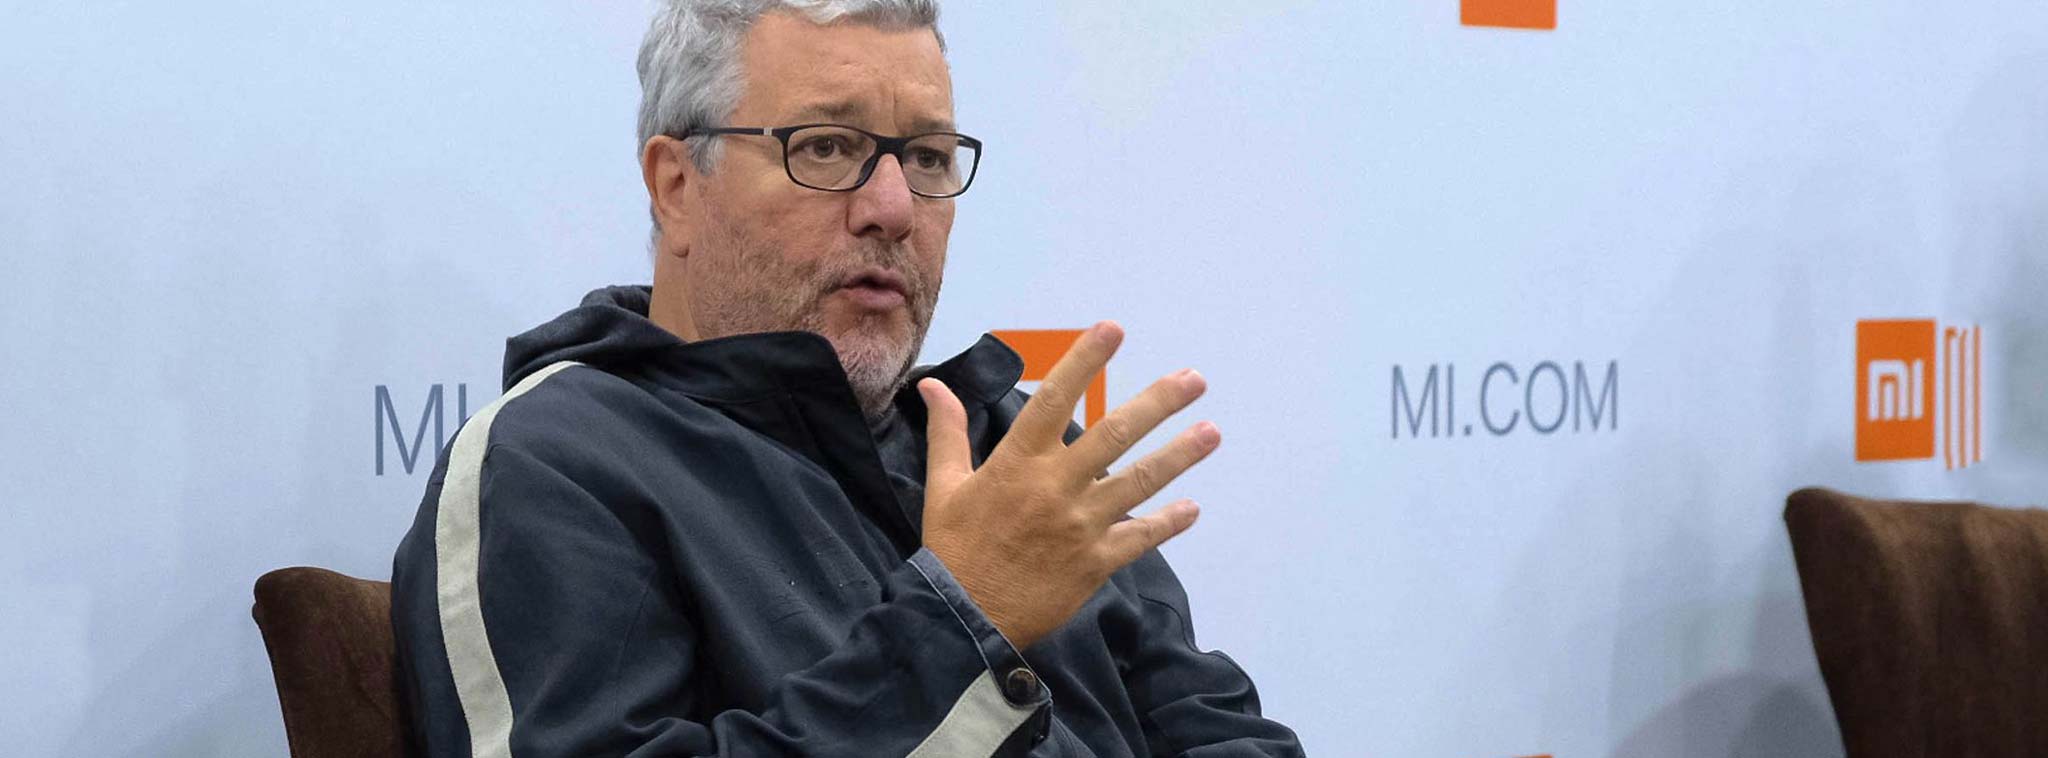 Philippe Starck nói về màn hình viền mỏng và tương lai của thiết kế điện thoại